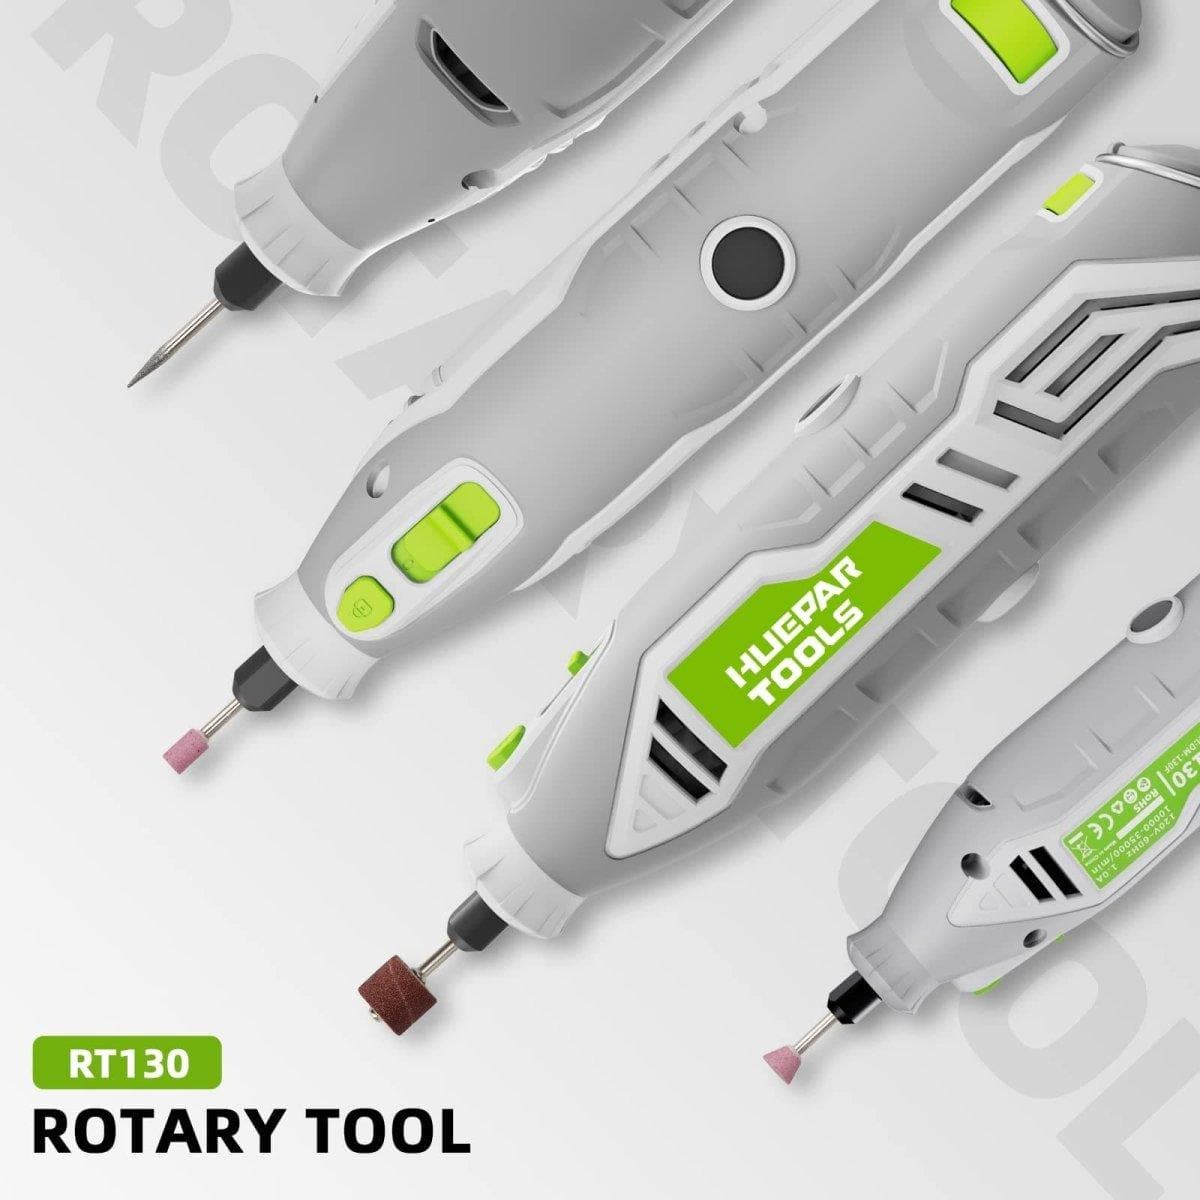 Huepar RT130 - 130W Rotary Tool Kit - HUEPAR US